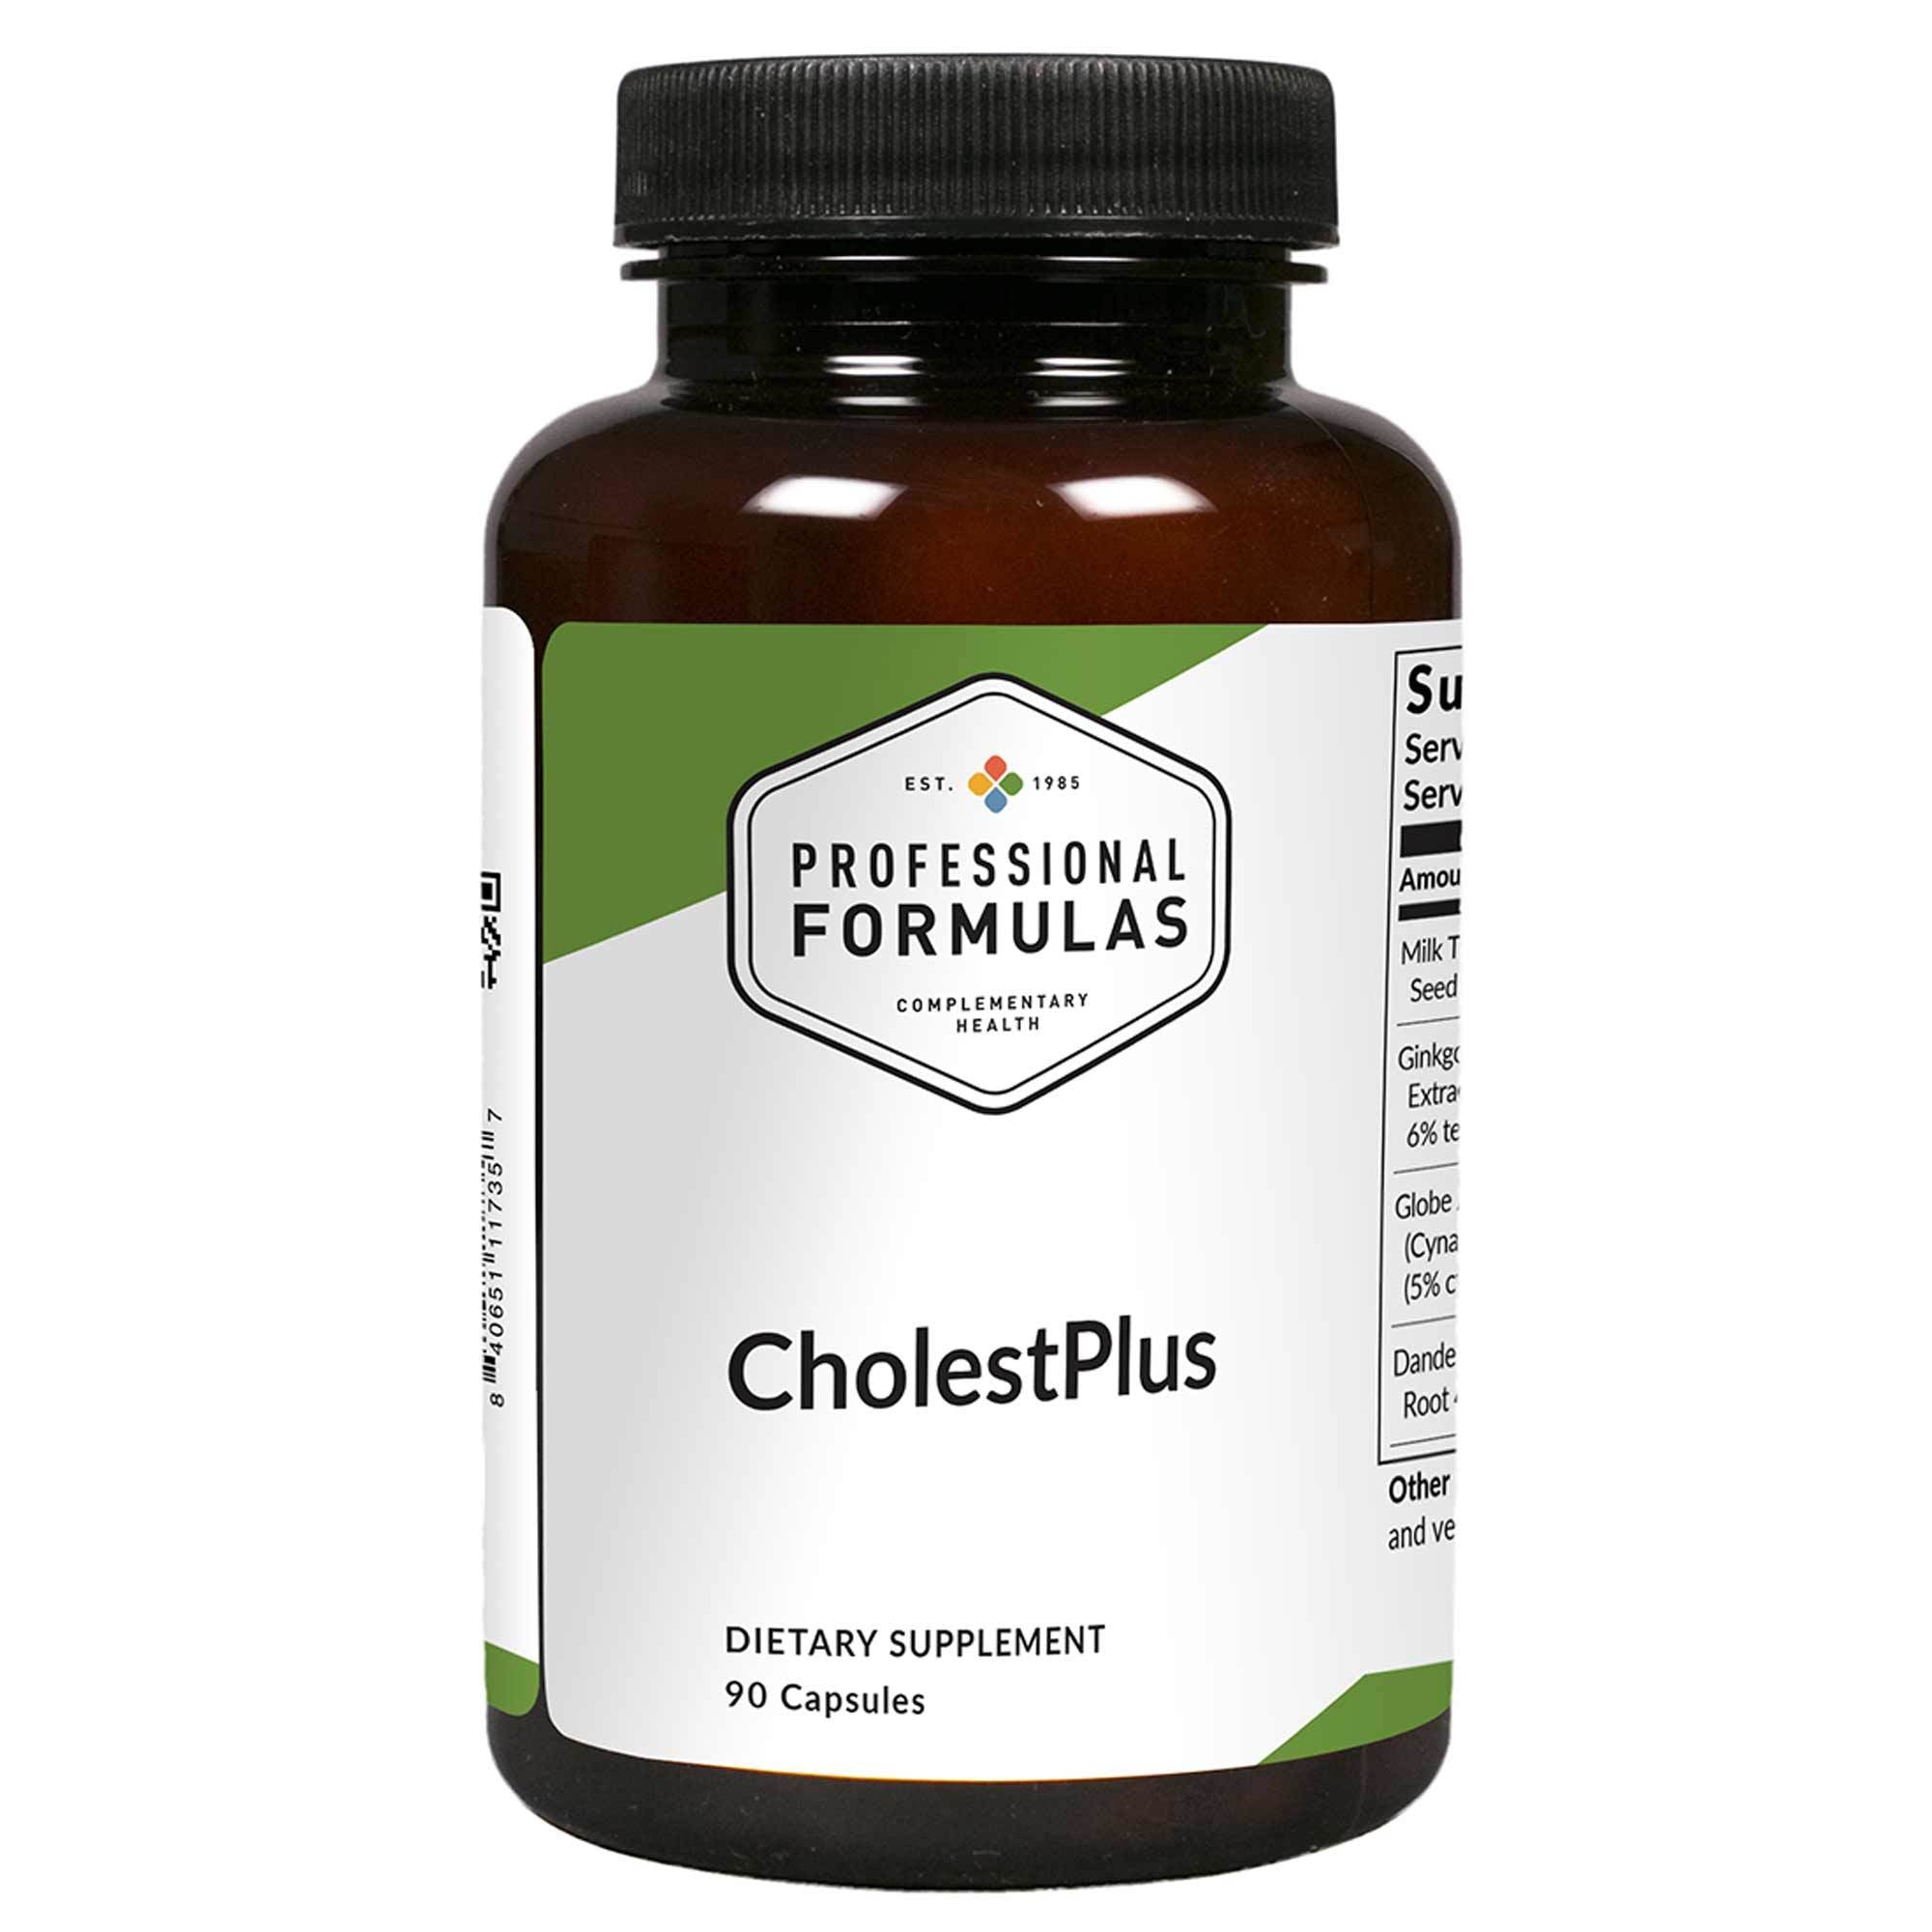 Professional Formulas - CholestPlus - 90 Capsules